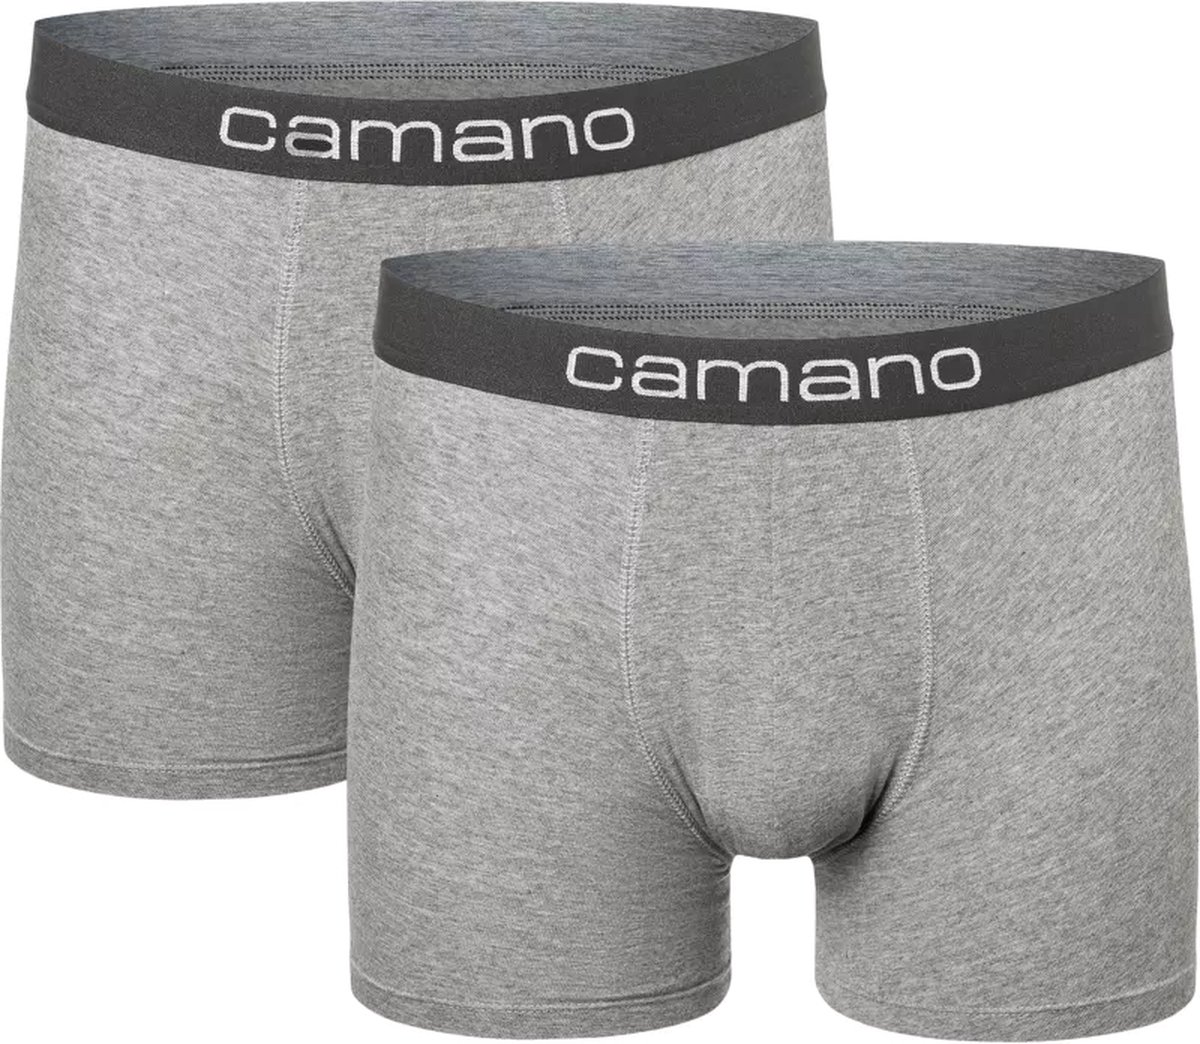 Camano - Boxershorts - High Comfort - Katoen - Stretch - Top Boxers - Grijs melange - XXL